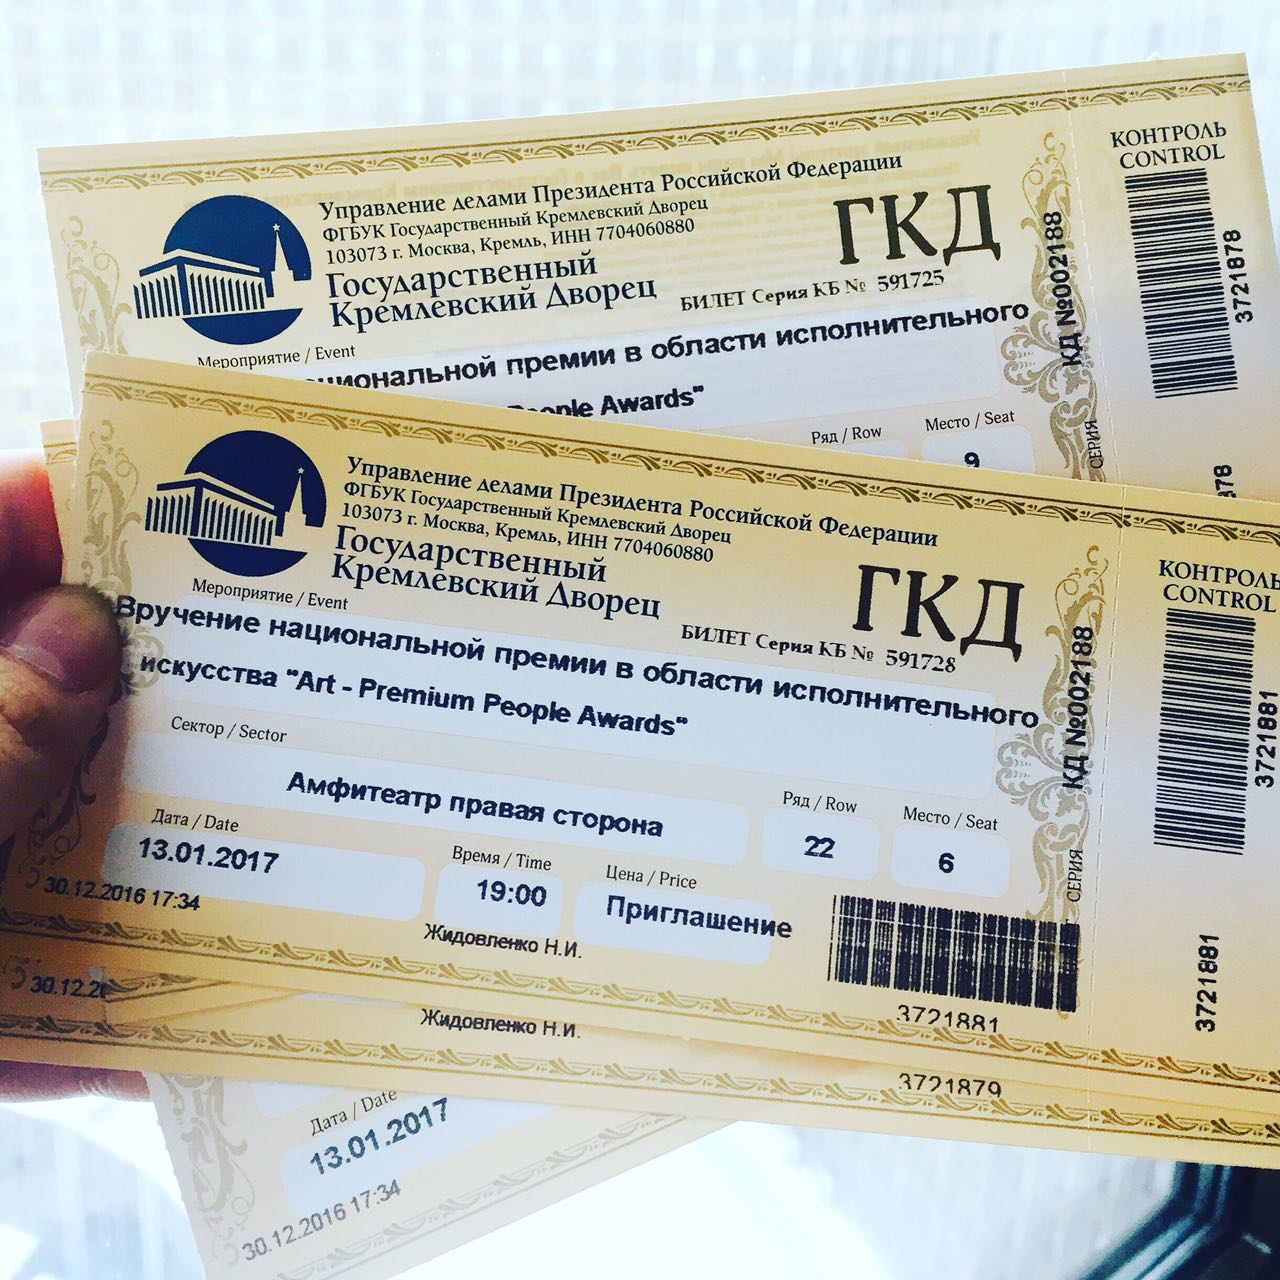 Кремлевский дворец билеты на балет. Билет на концерт. Кремлевский дворец билеты. ГКД билеты.